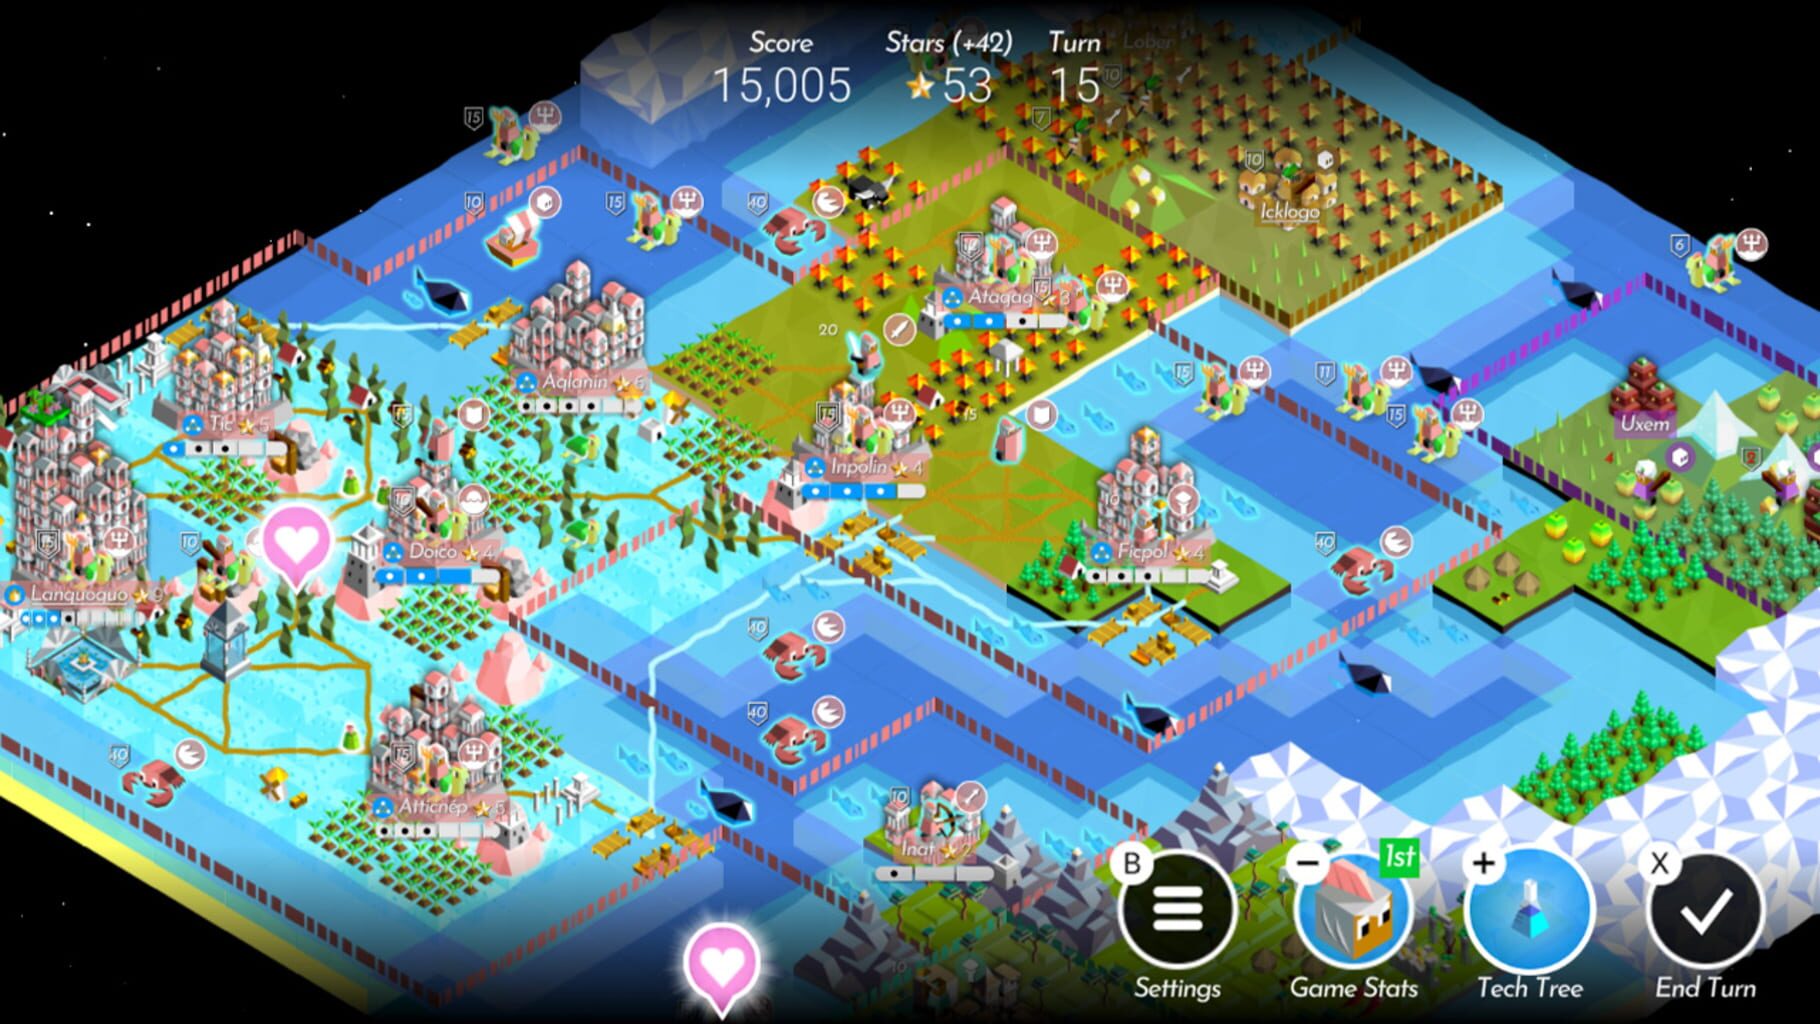 Aquarion: The Battle of Polytopia screenshot